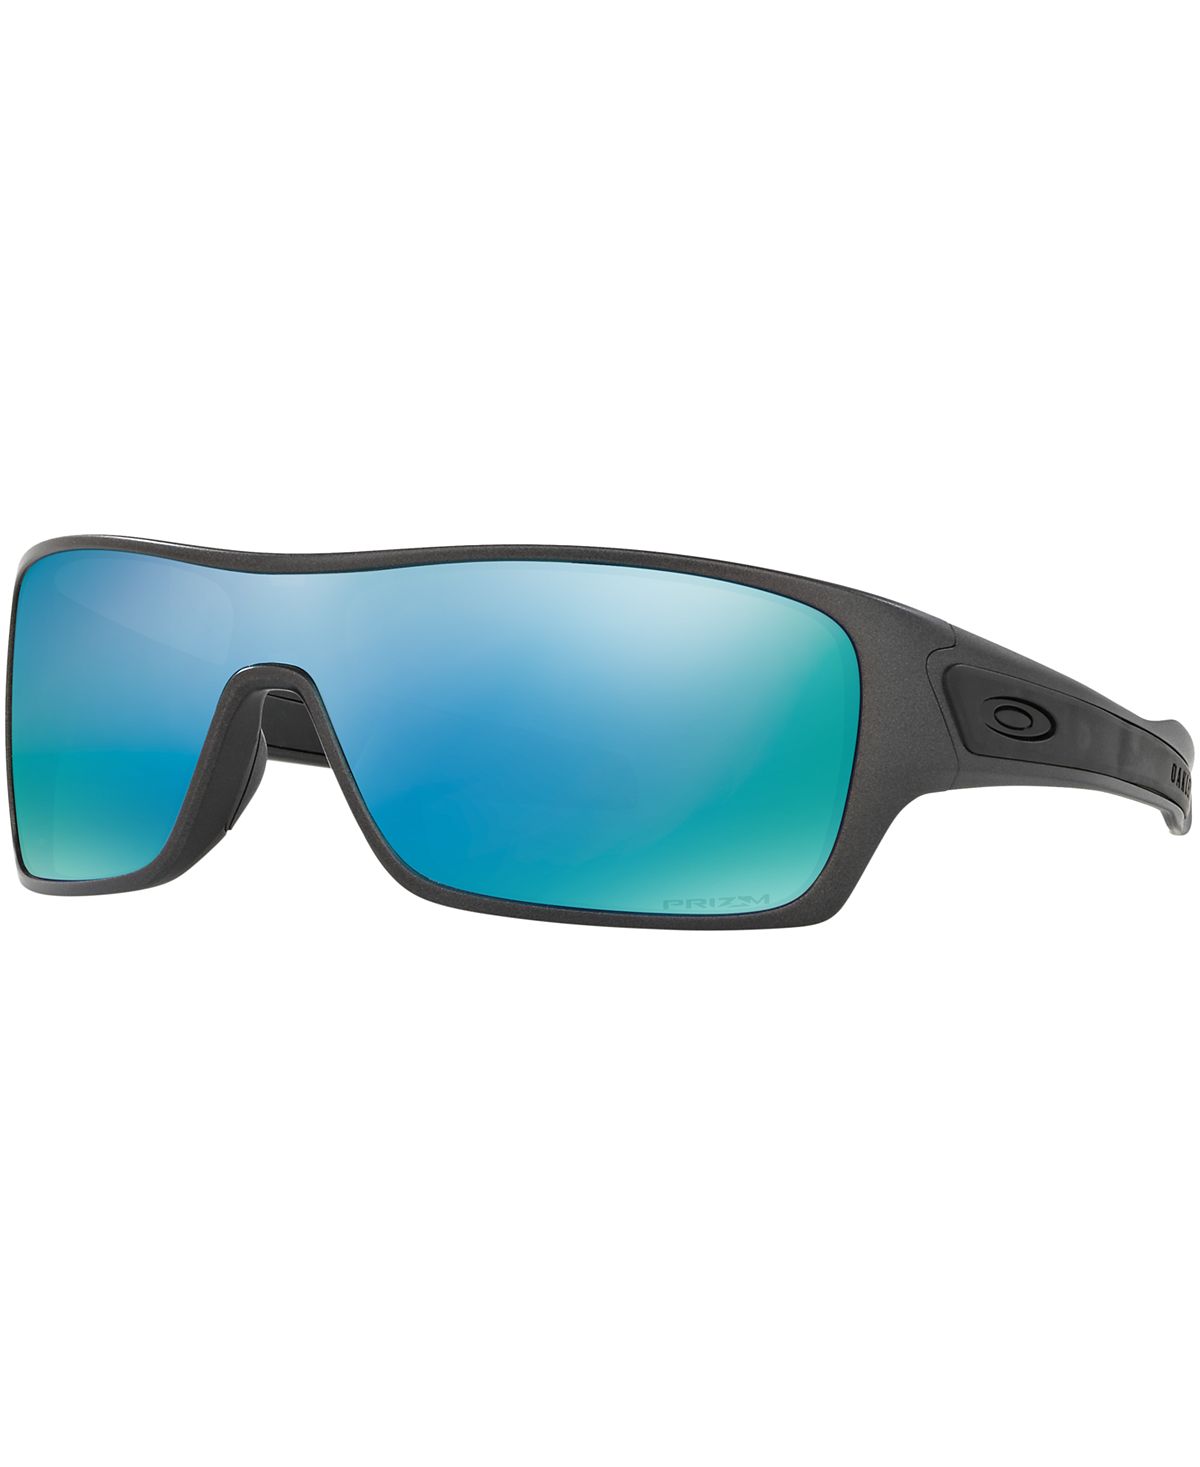 цена Поляризованные солнцезащитные очки Prizm с ротором турбины для глубокой воды, OO9307 Oakley